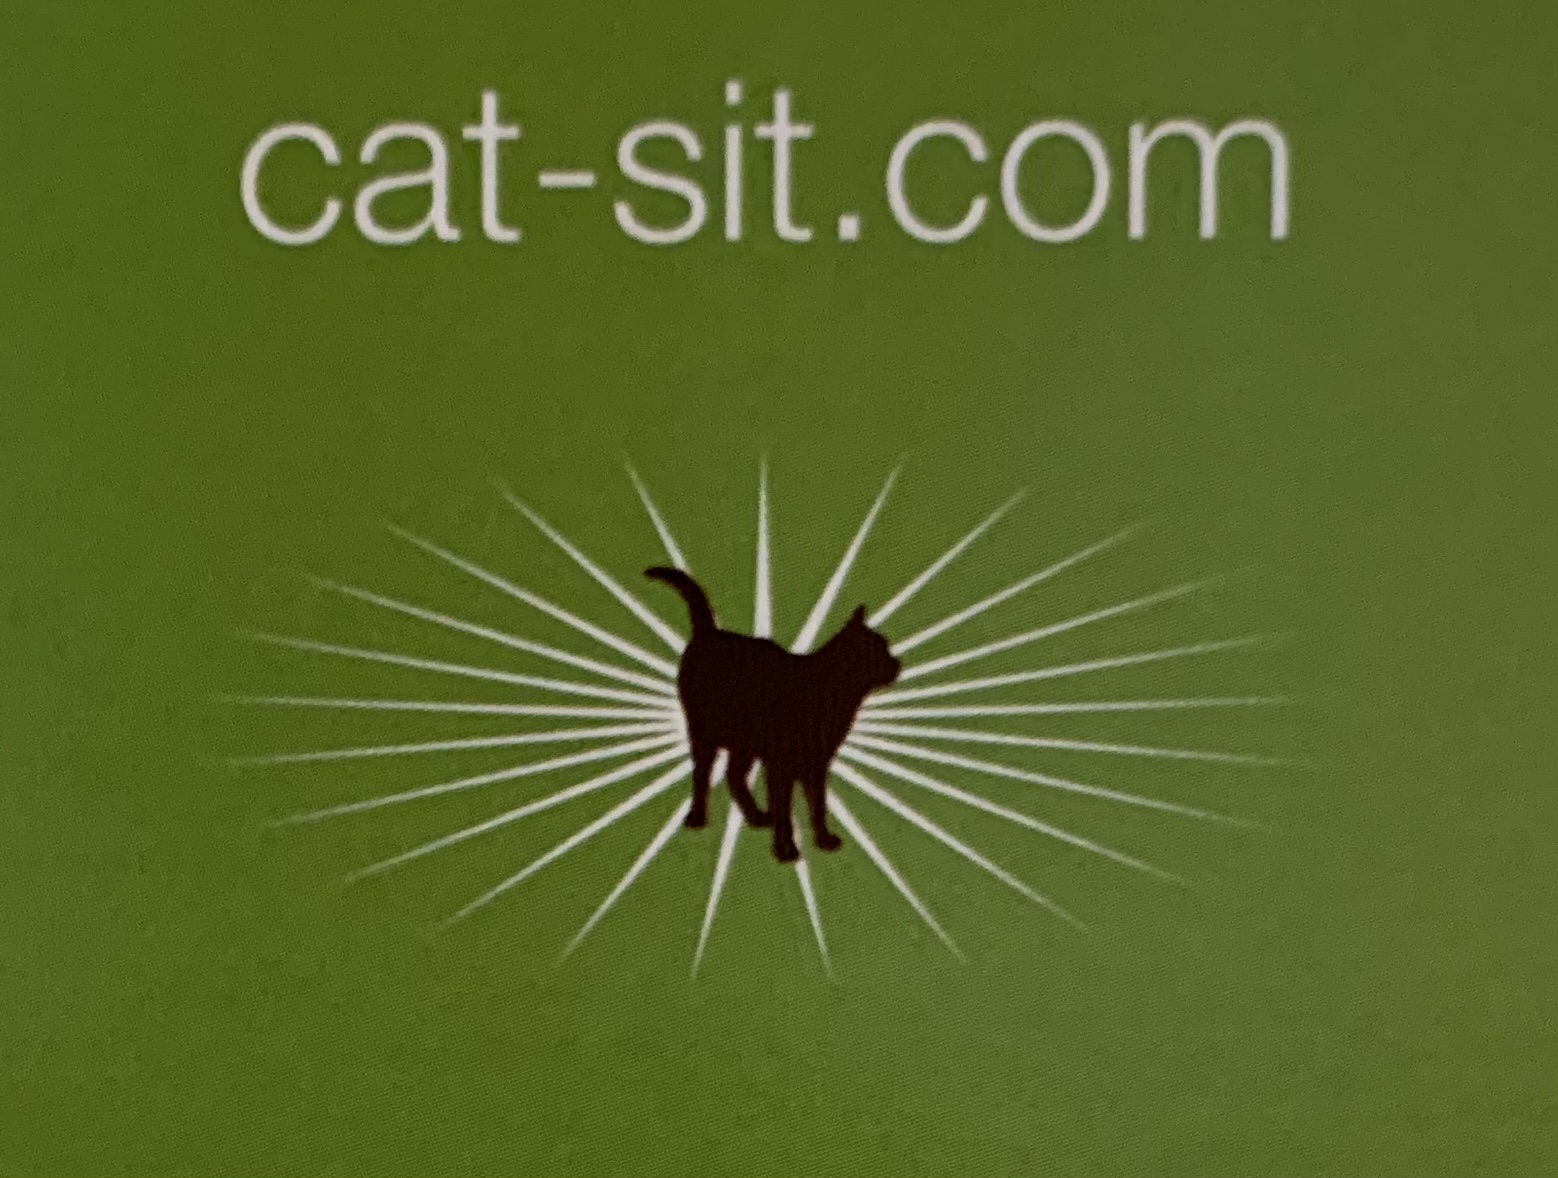 Cat-Sit.com  Danny's Cat Sitting